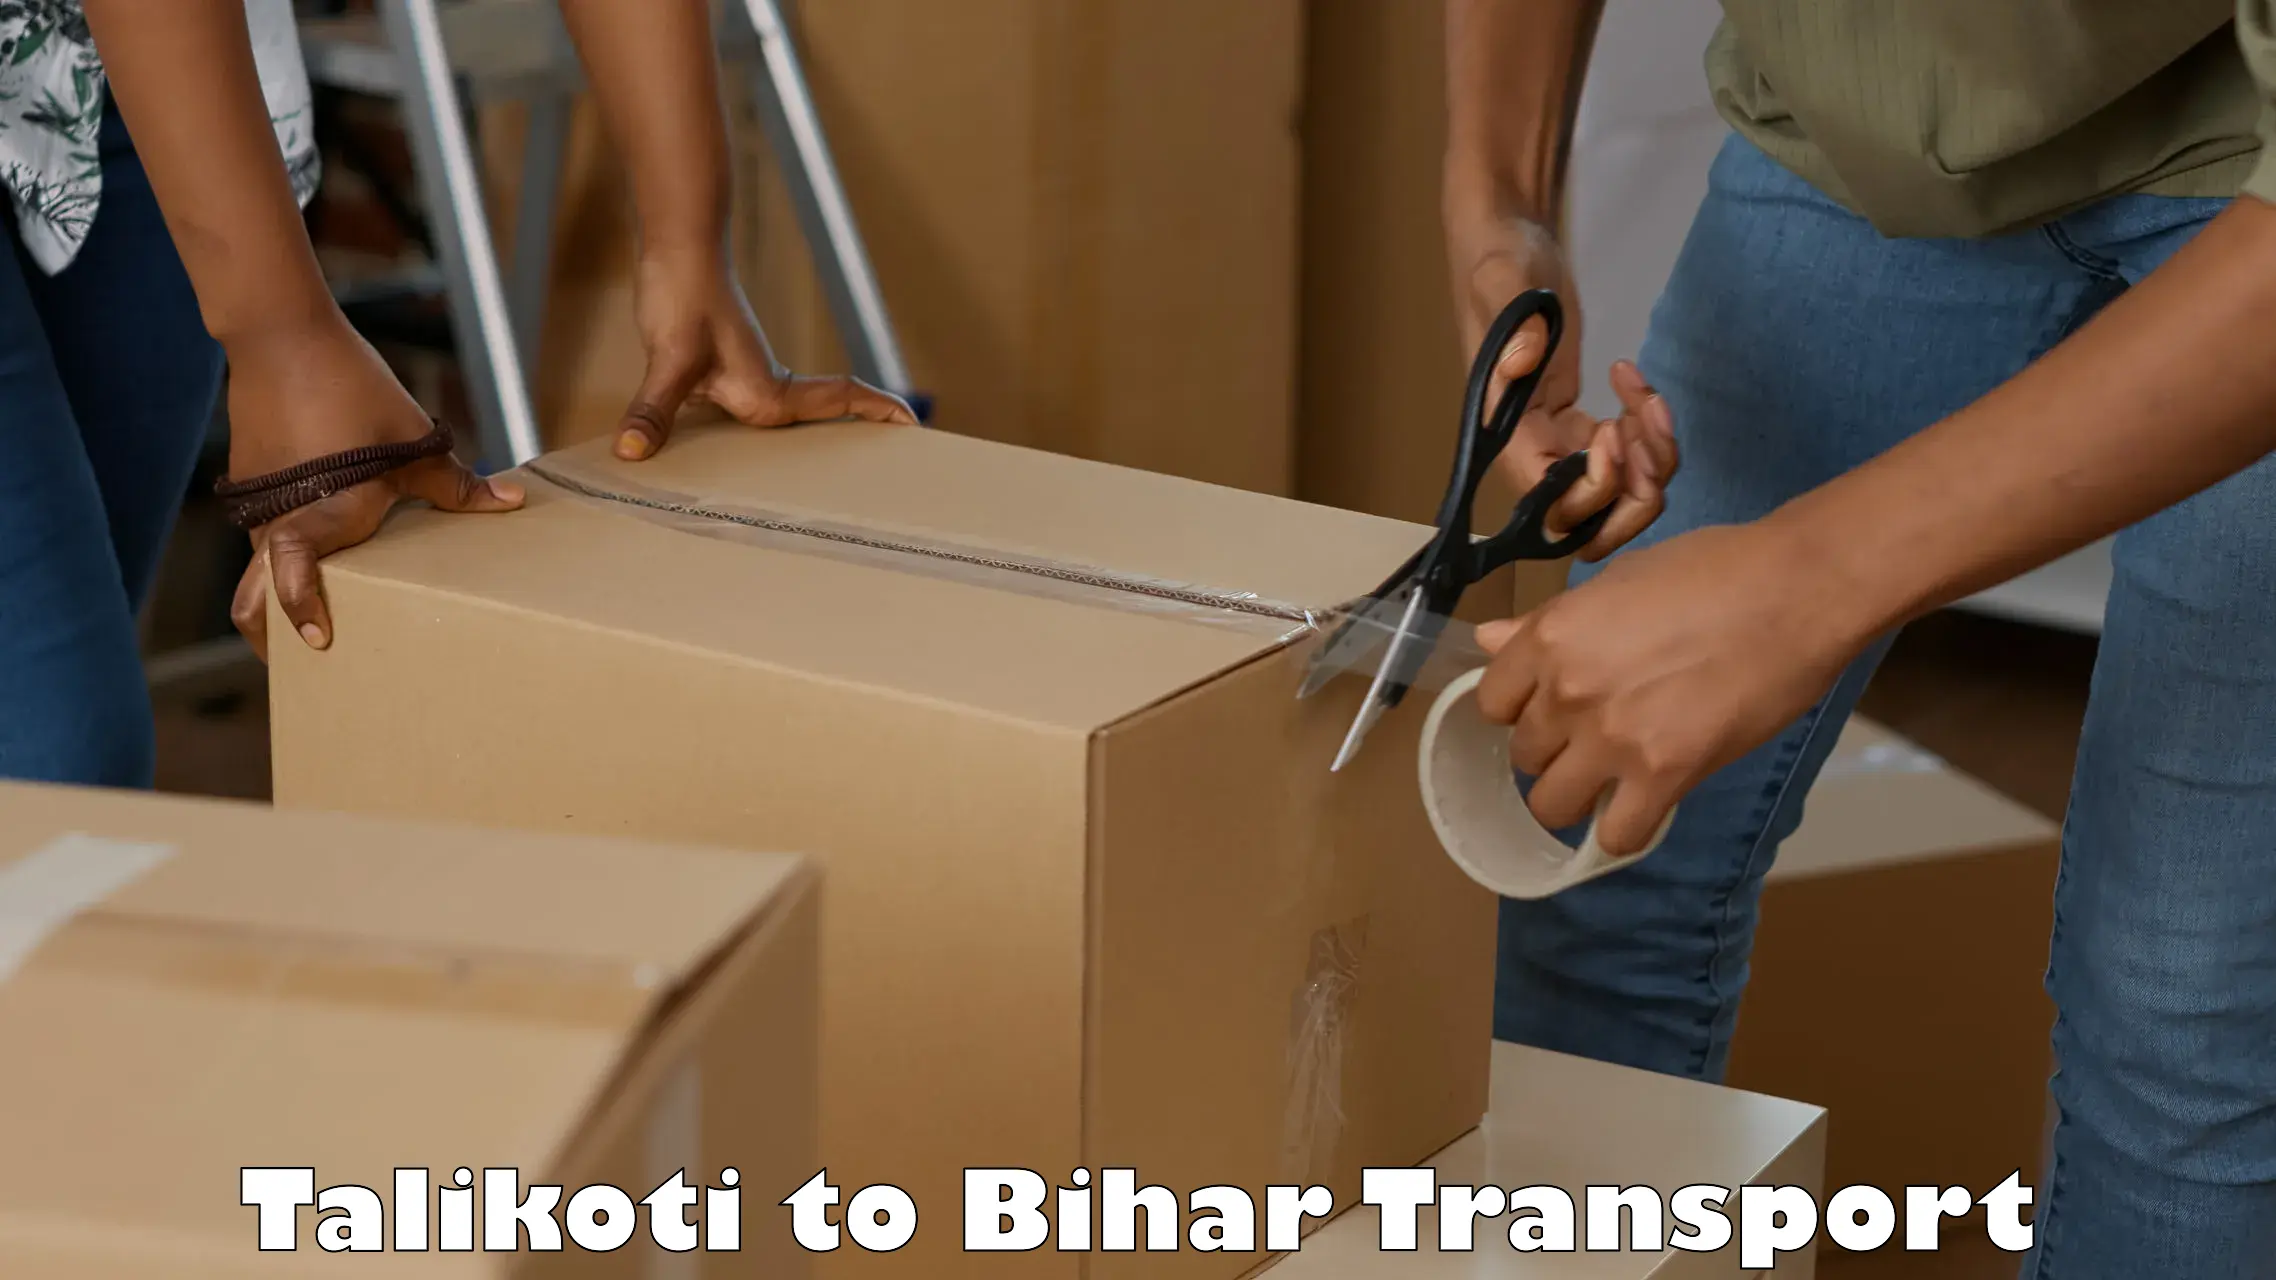 Pick up transport service Talikoti to Maheshkhunt